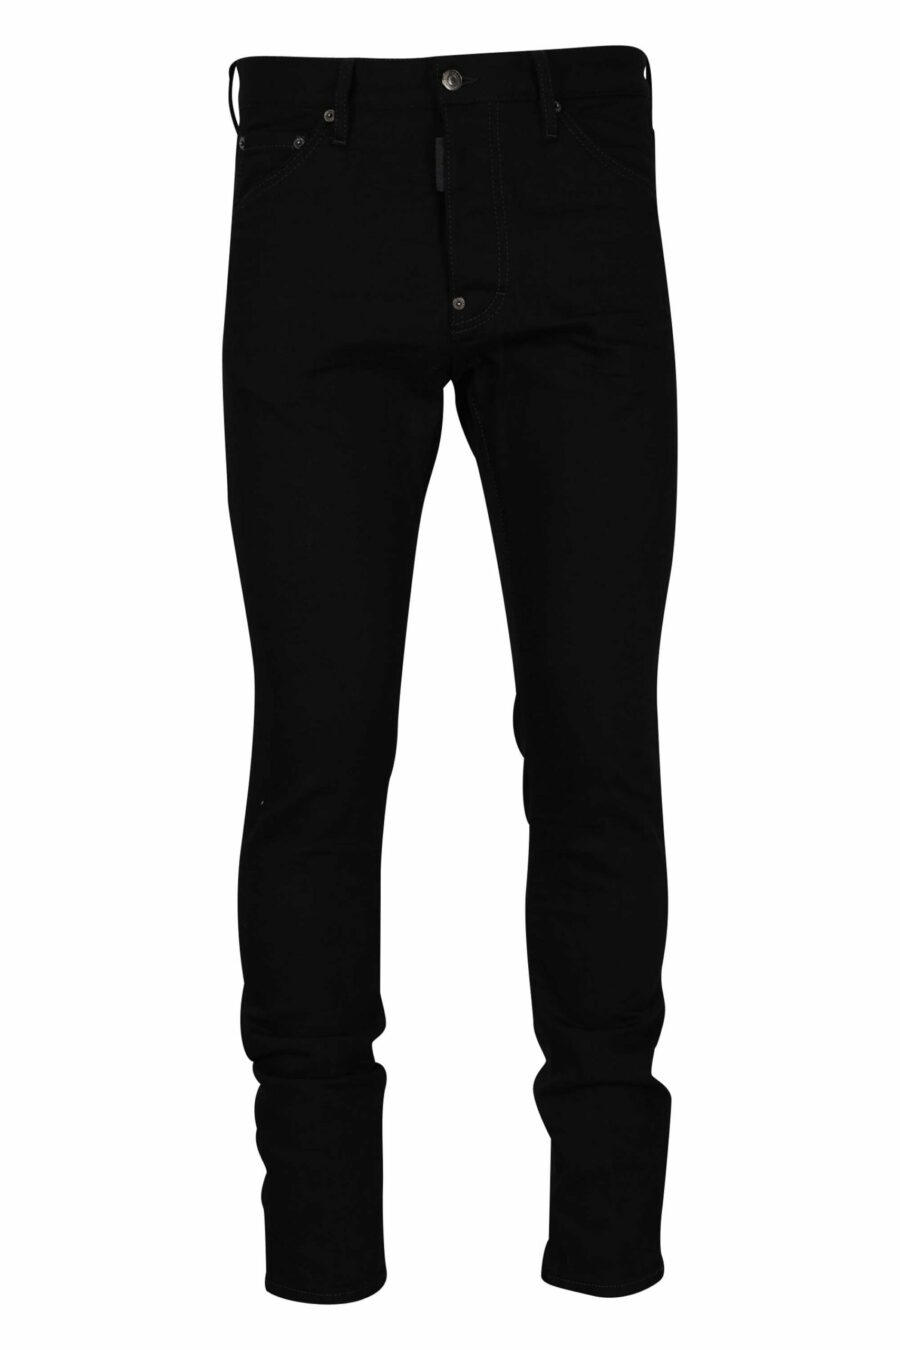 Pantalon noir "cool guy jean" - 8054148284039